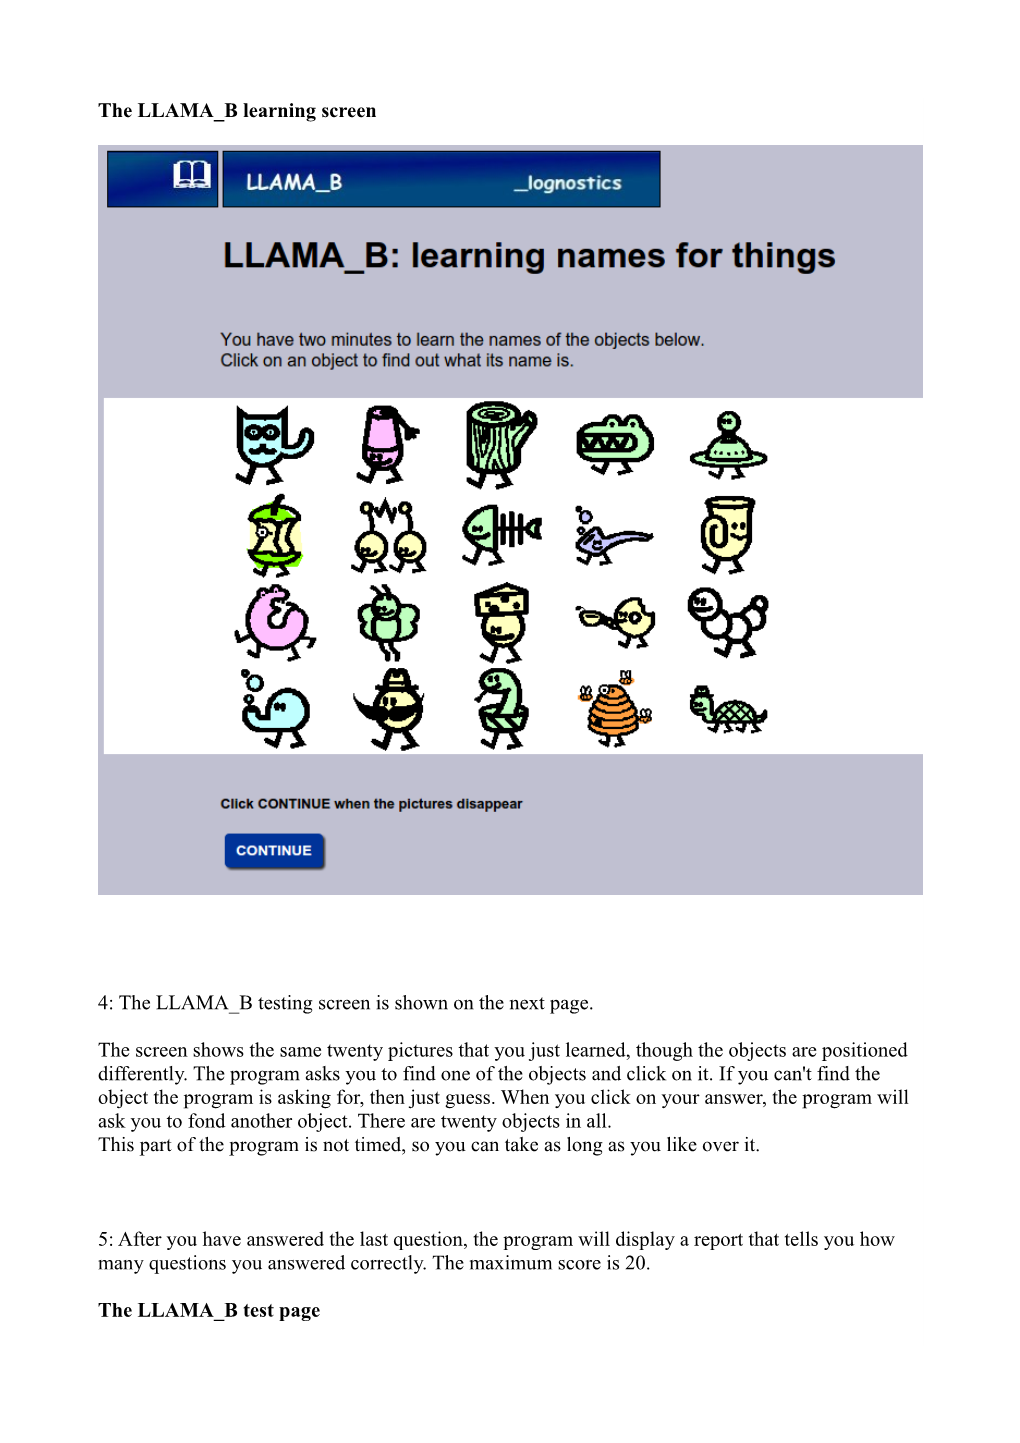 LLAMA B: the Manual